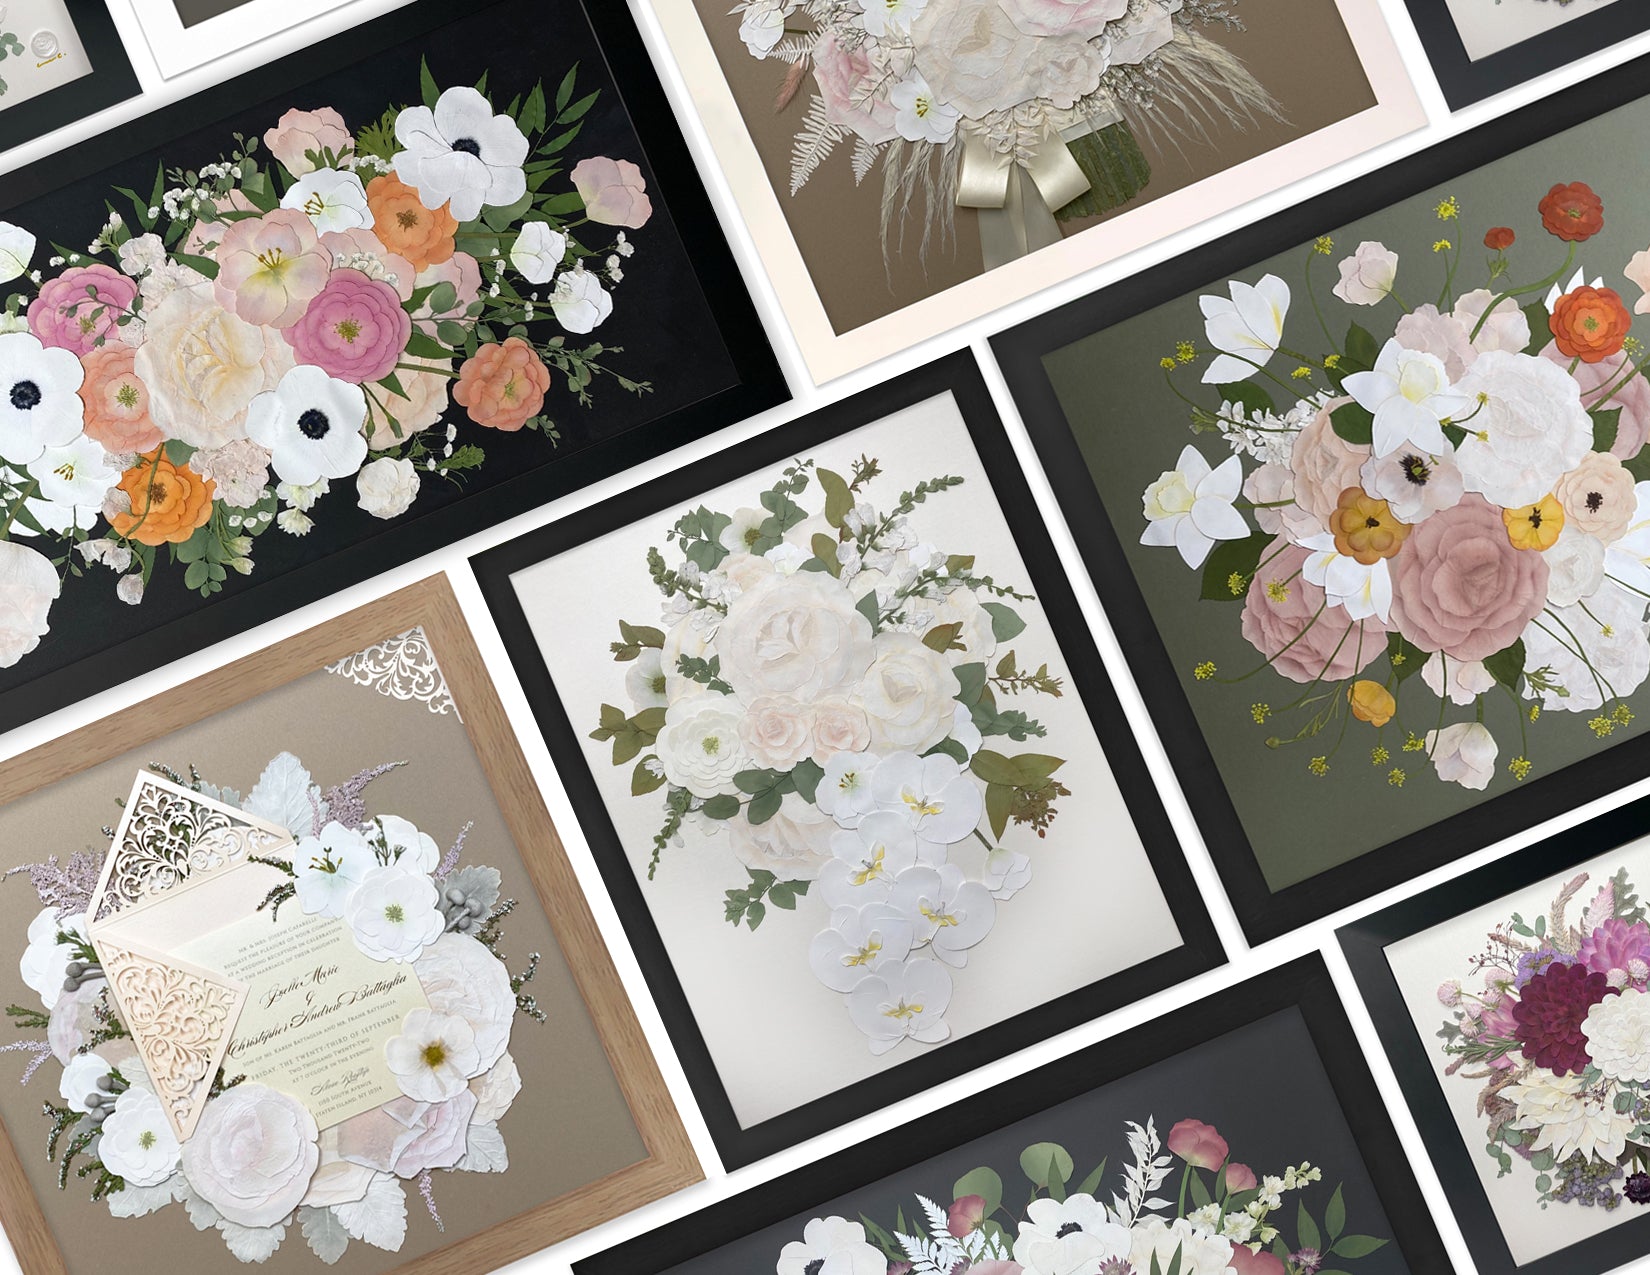 Pressed Framed Floral Preserves And Flower Invitation Arrangements - DBAndrea